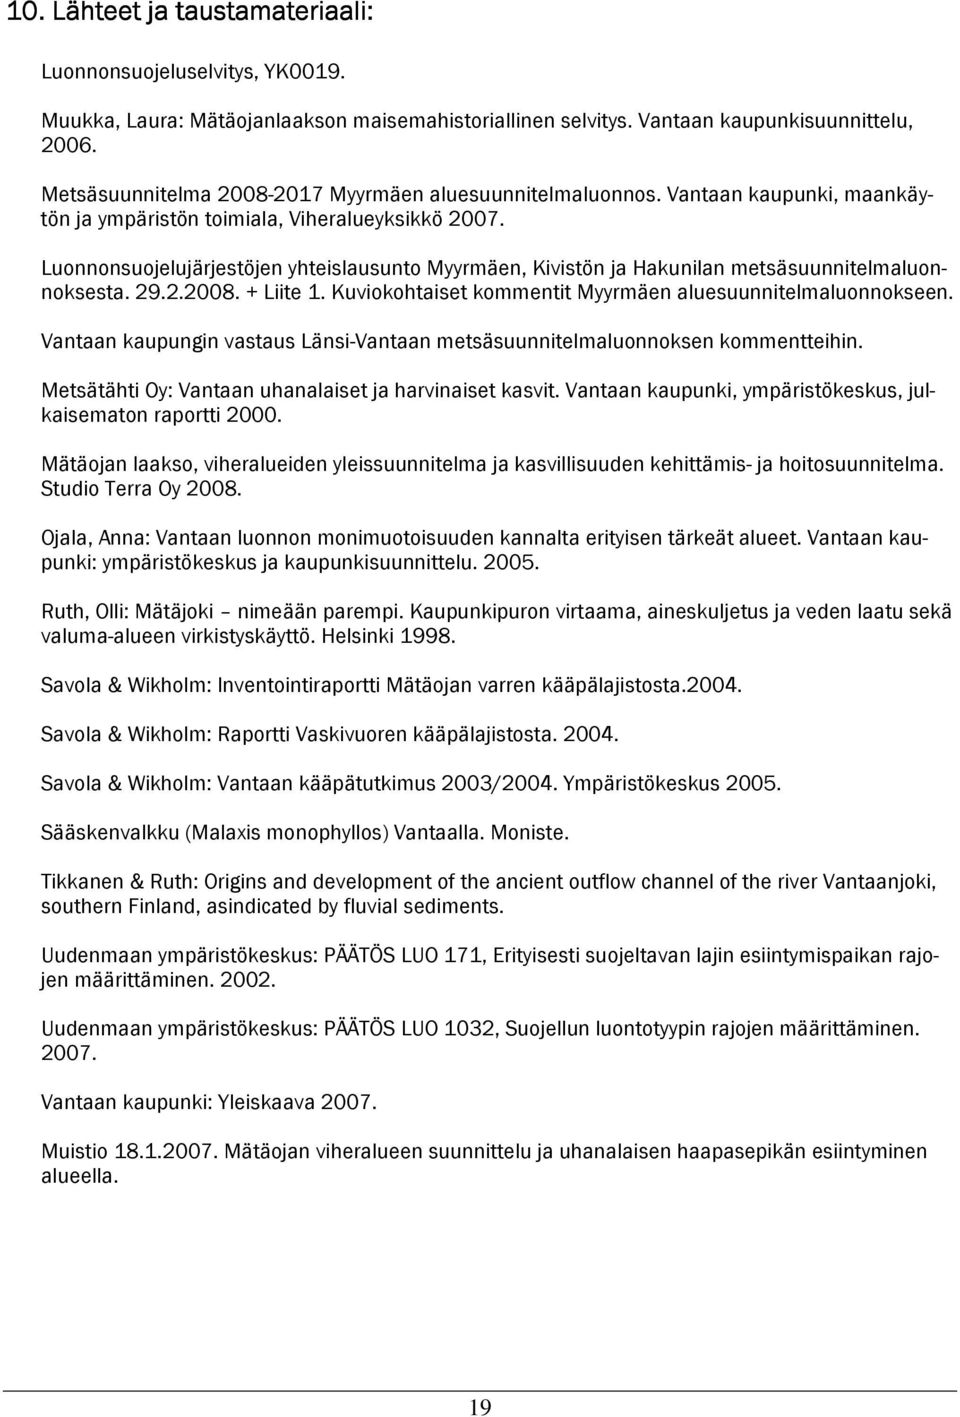 Luonnonsuojelujärjestöjen yhteislausunto Myyrmäen, Kivistön ja Hakunilan metsäsuunnitelmaluonnoksesta. 29.2.2008. + Liite 1. Kuviokohtaiset kommentit Myyrmäen aluesuunnitelmaluonnokseen.